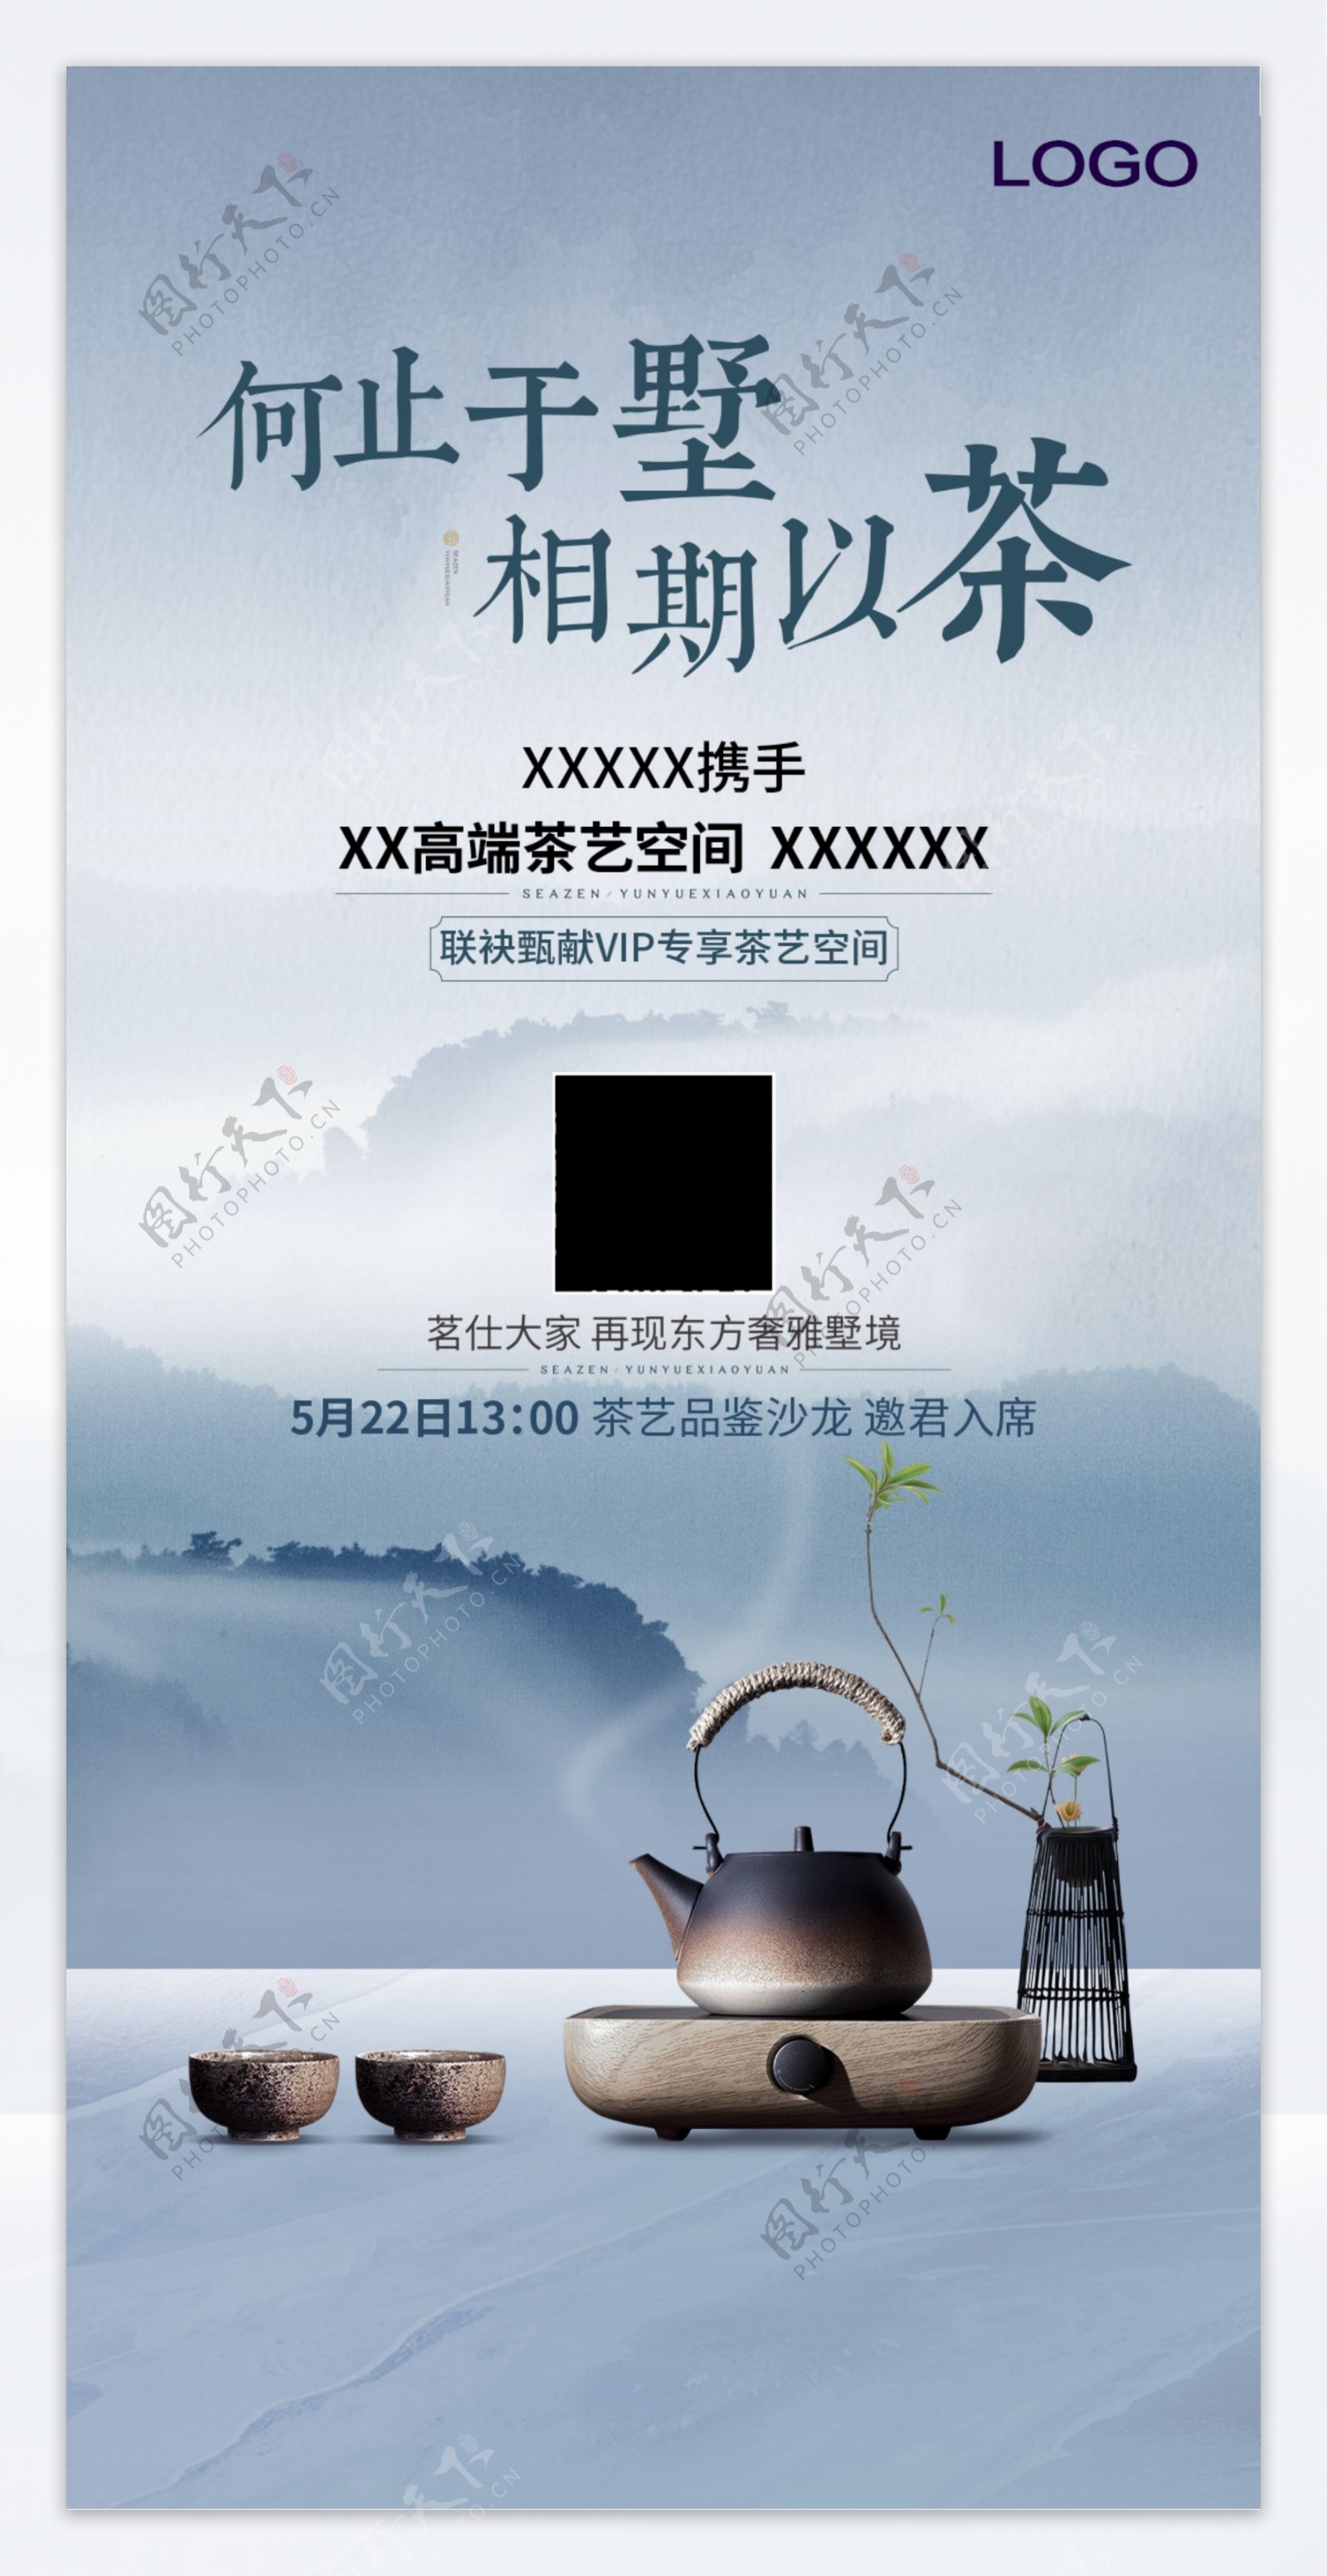 茶艺海报地产联合新中式